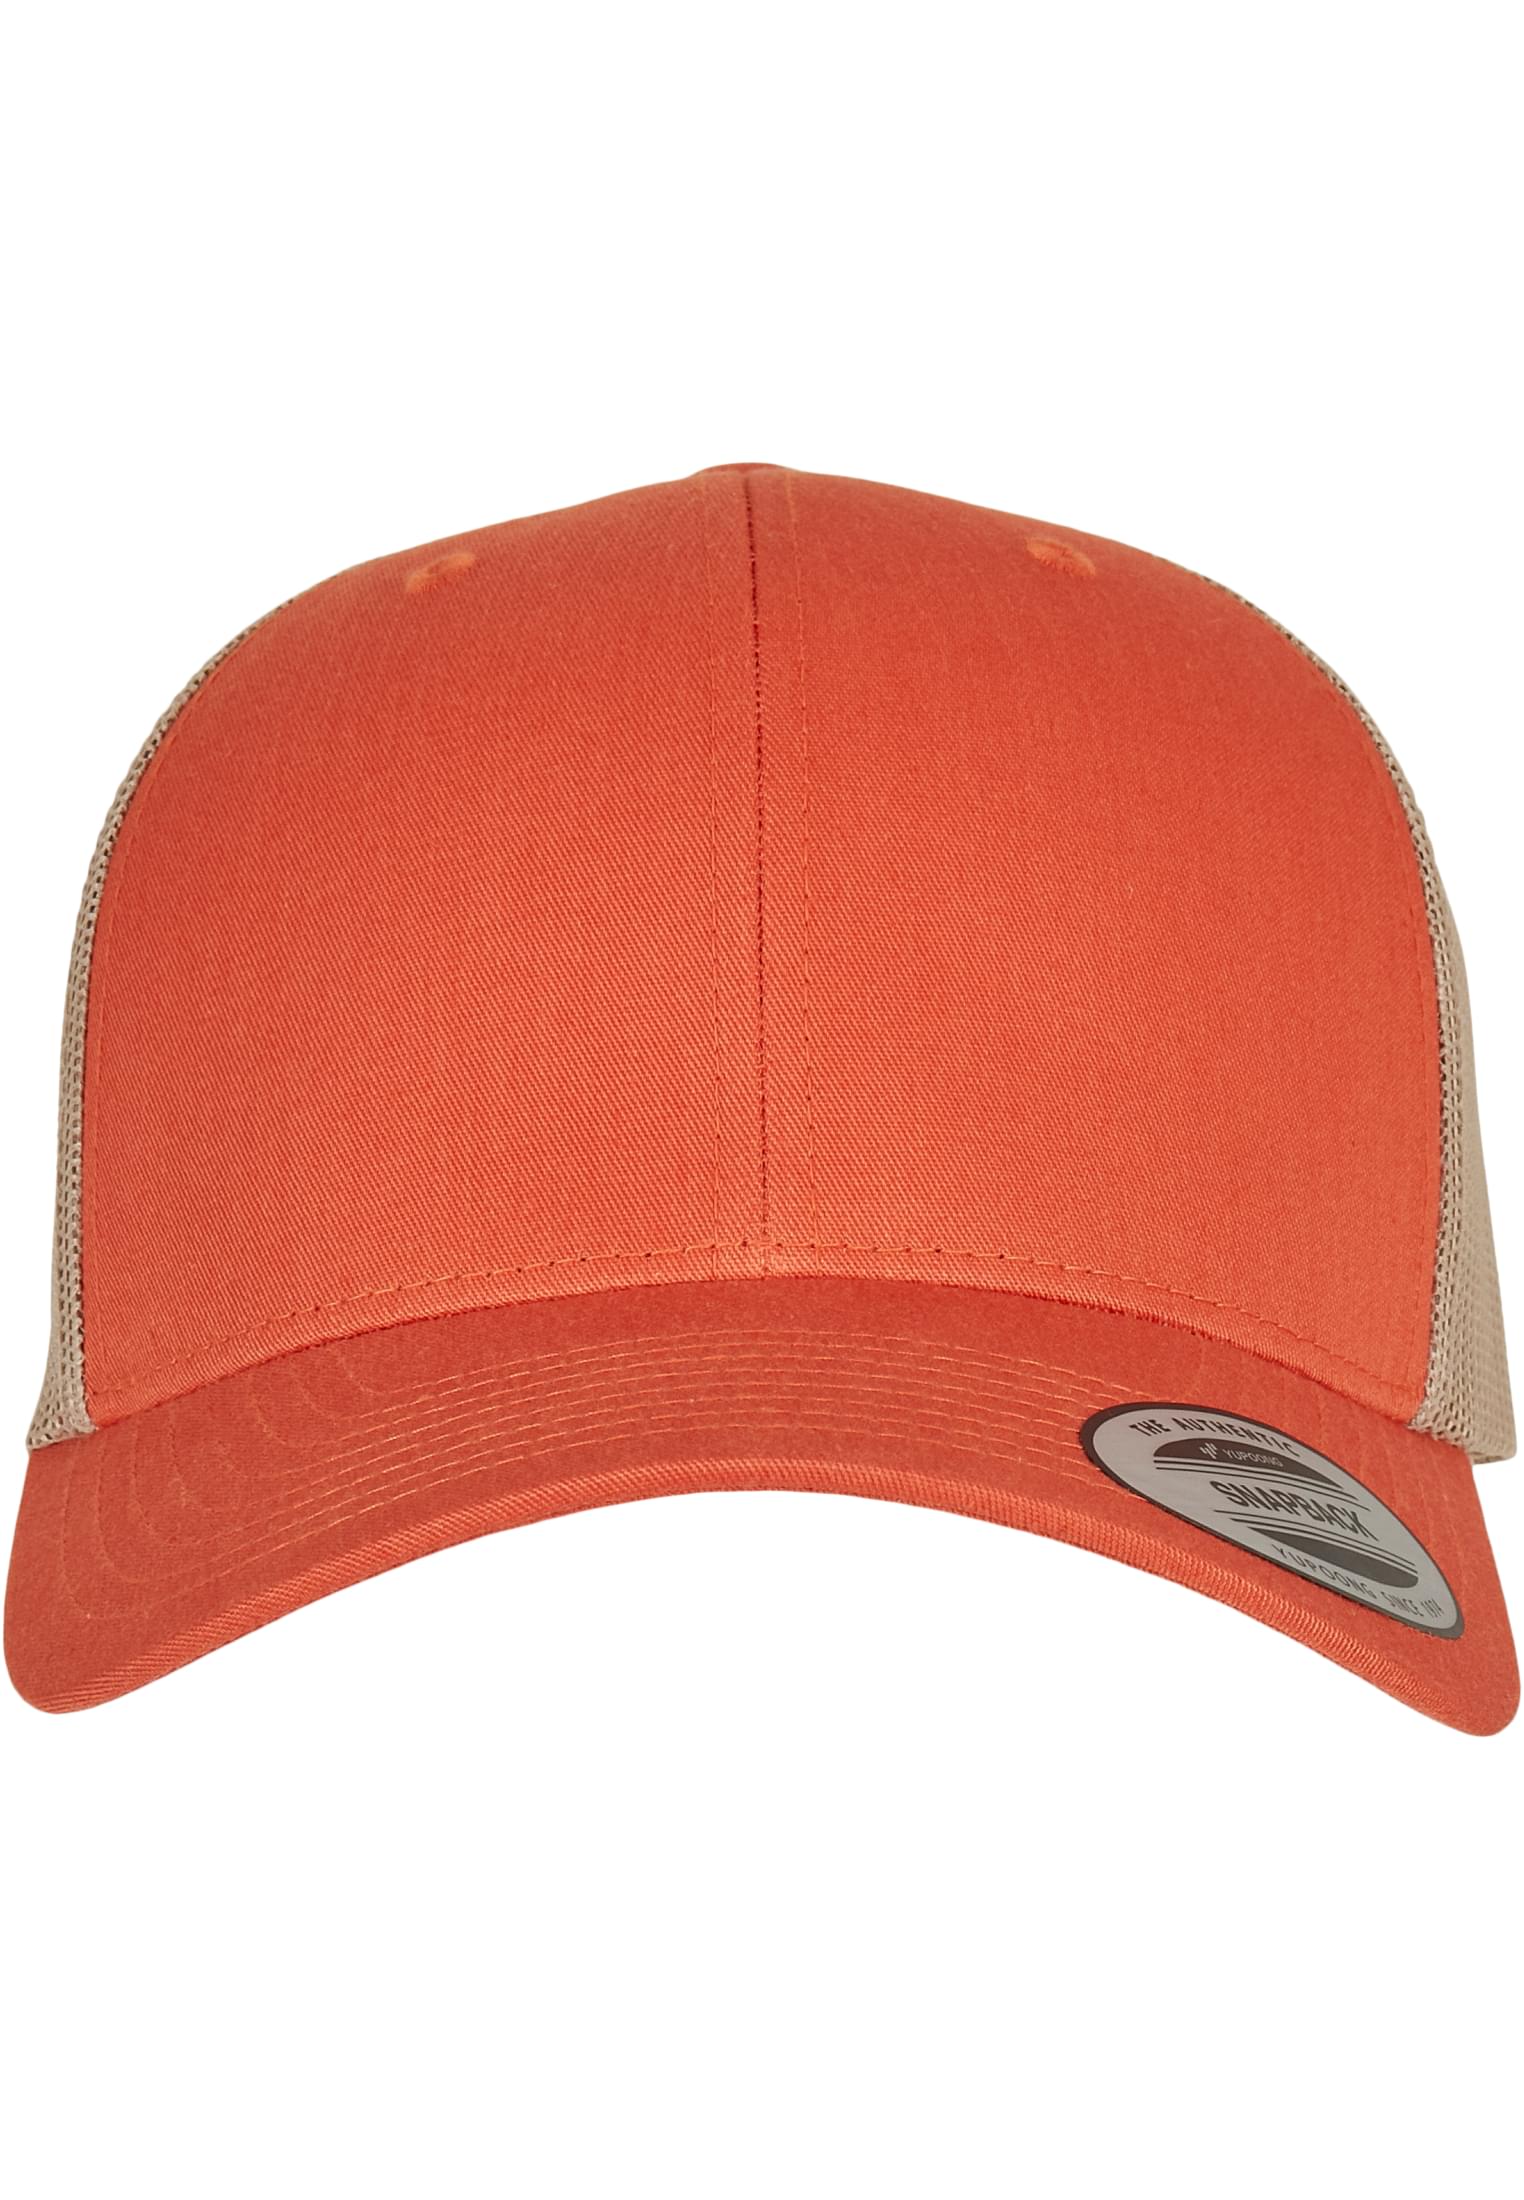 Retro Trucker Cap - Orange/Khaki